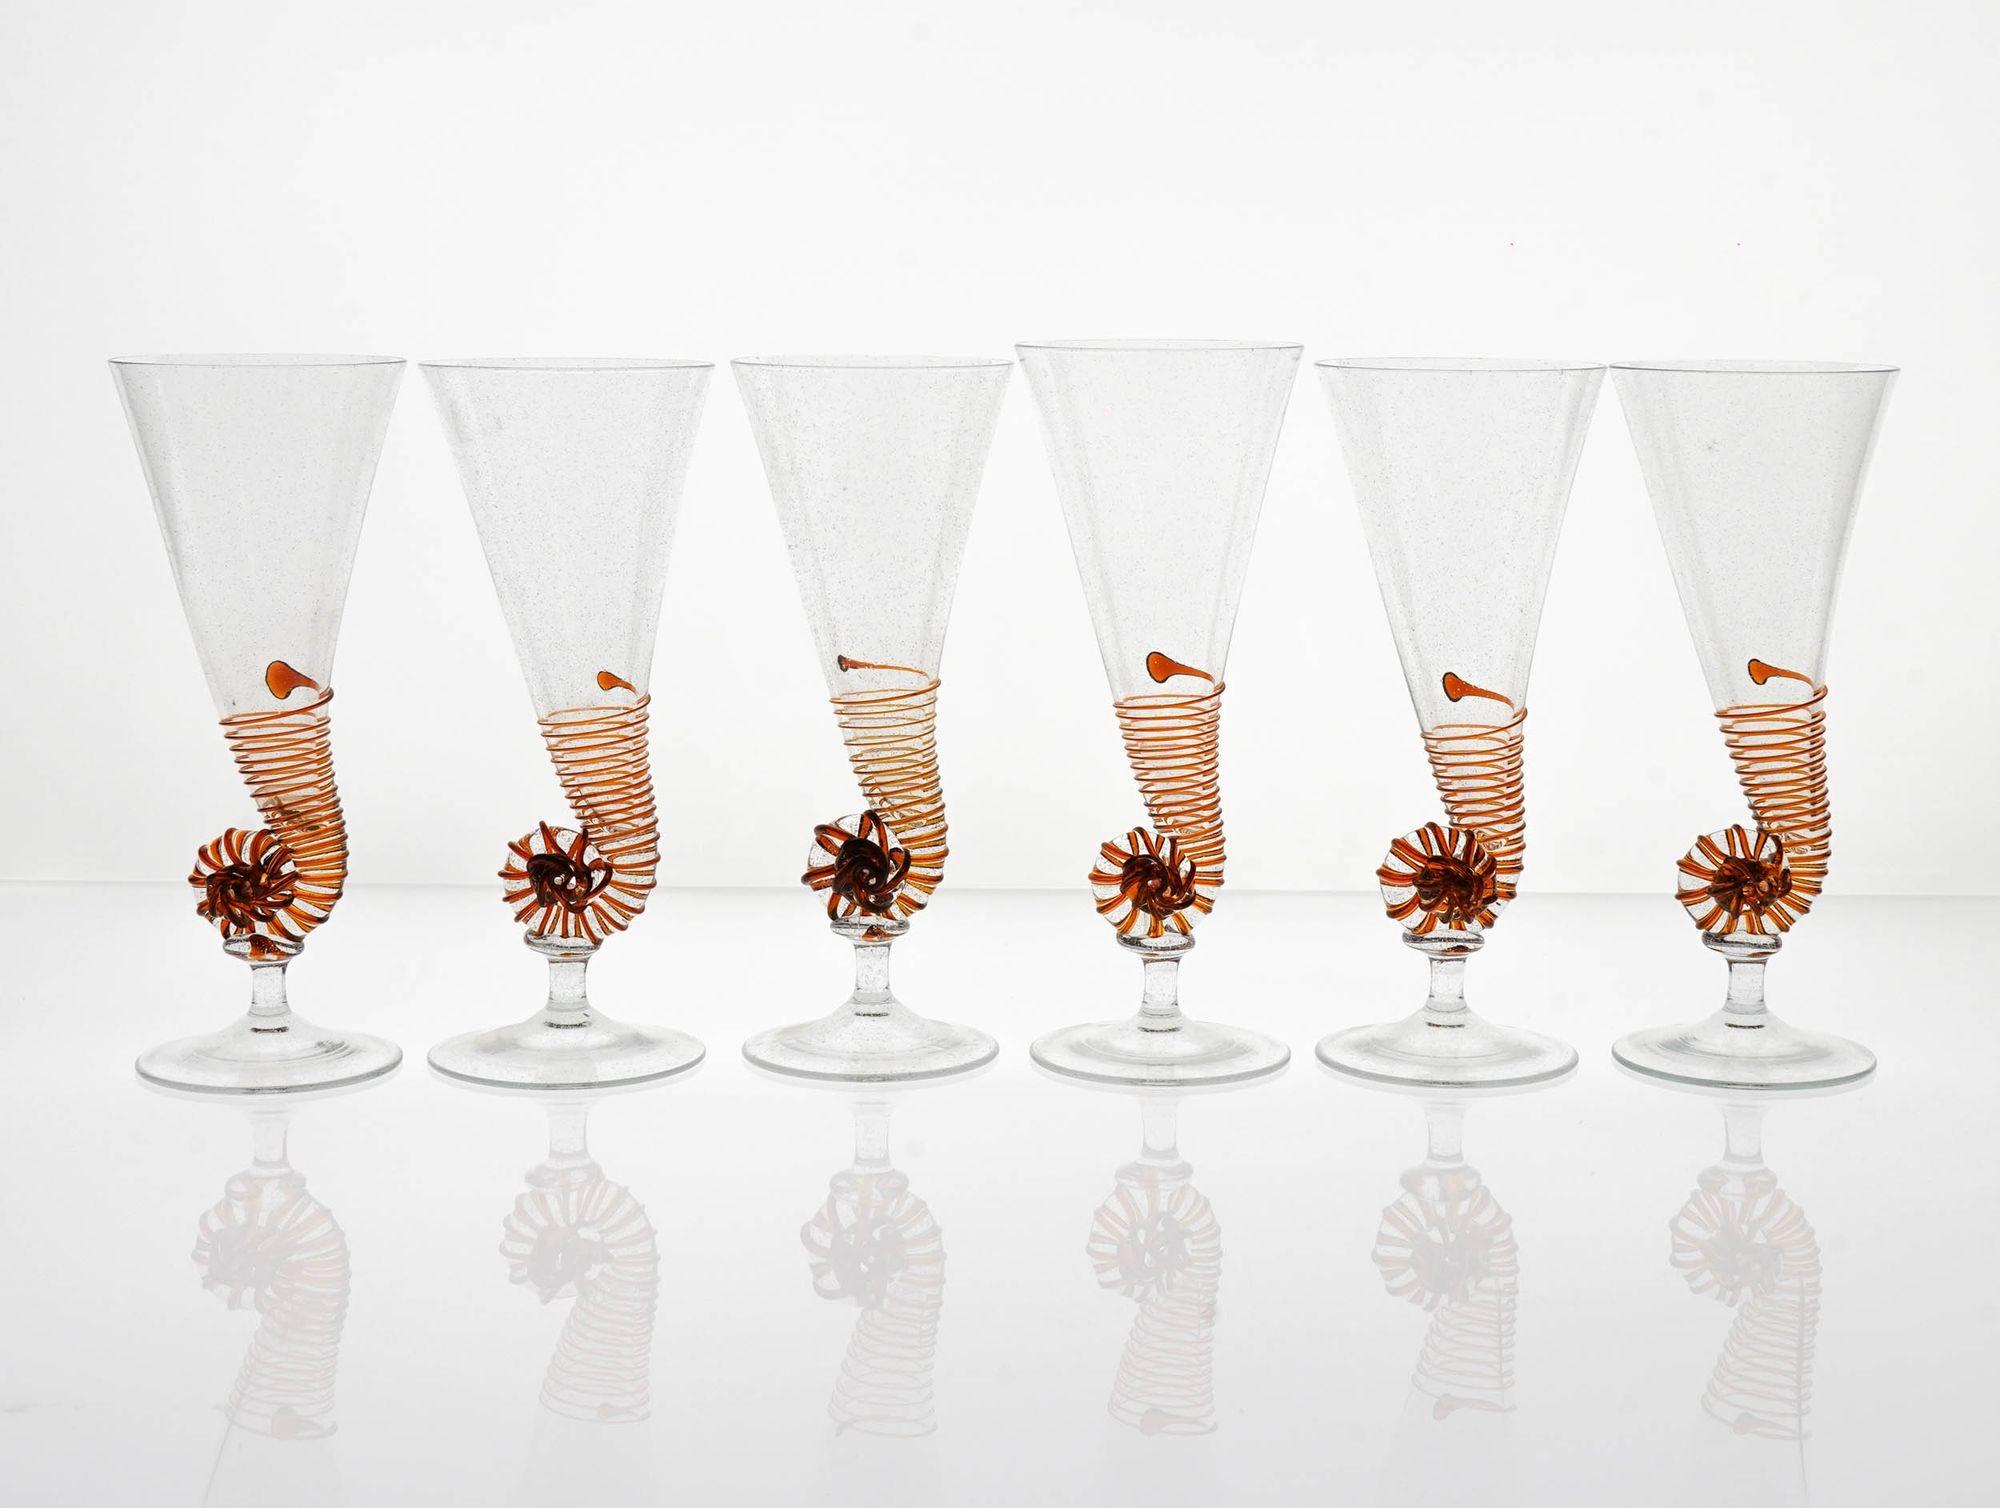 Voici ce rare et exceptionnel ensemble de flûtes anciennes en verre de Murano, inspiré par la coquille du nautile.

Ces flûtes uniques et artisanales sont un chef-d'œuvre d'artisanat, réalisées dans les années 1950 par Cenedese, l'un des verriers